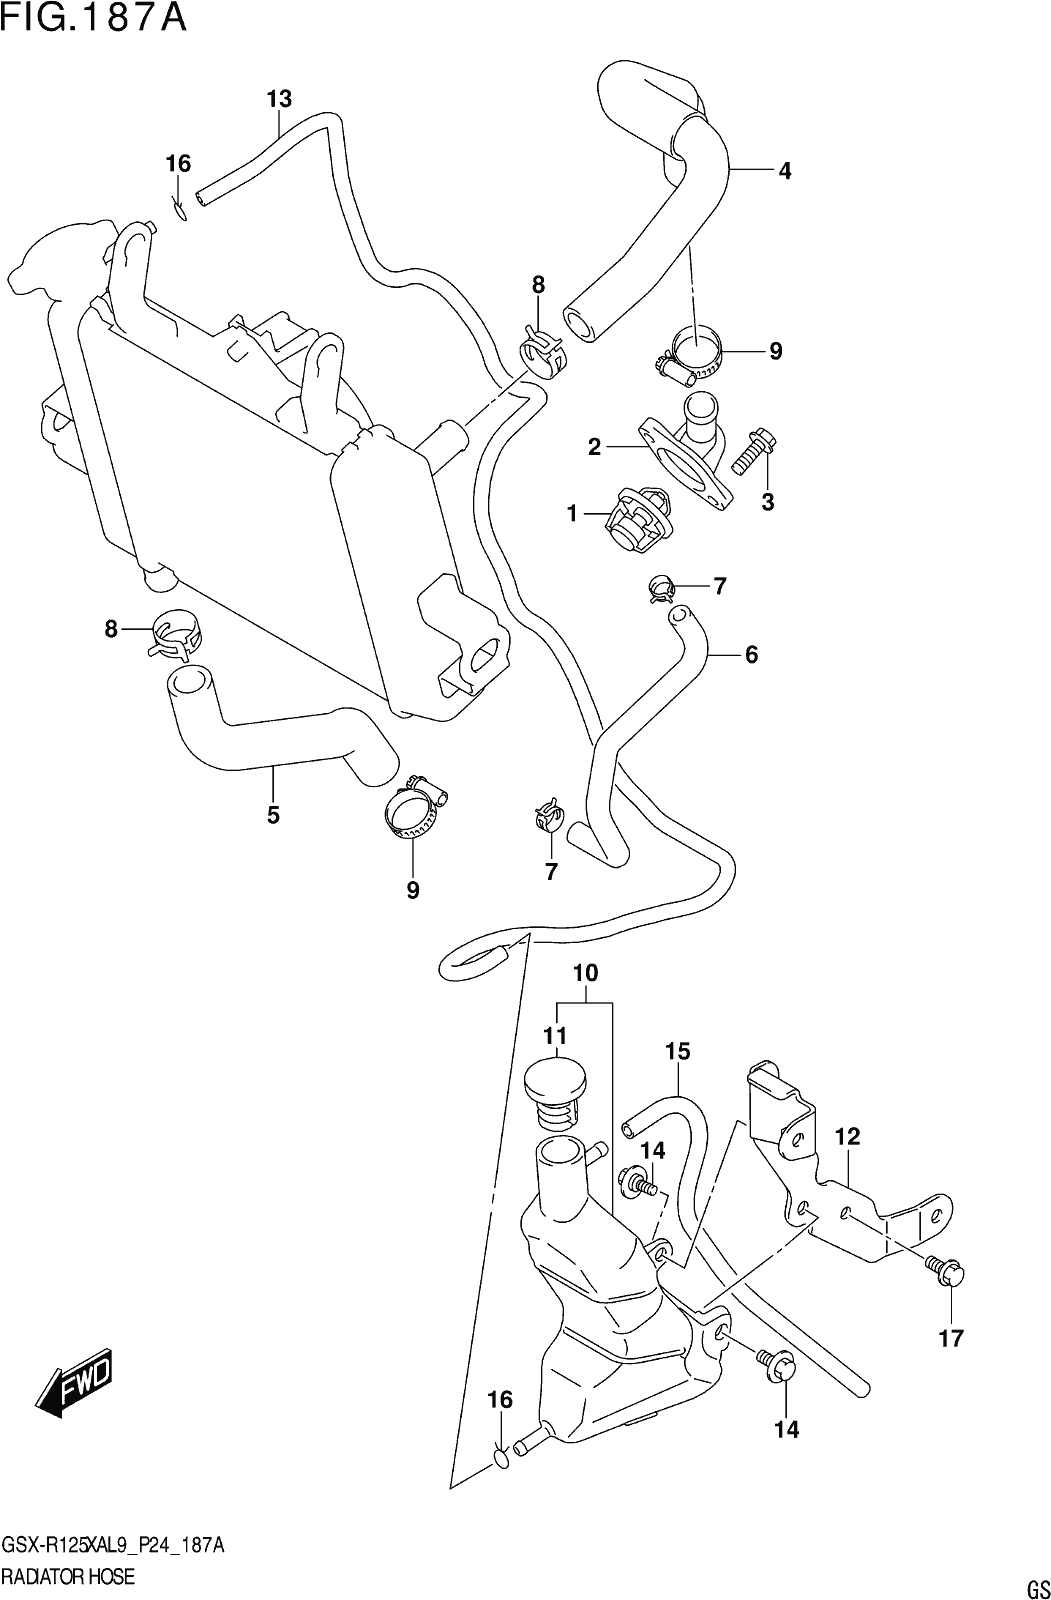 Fig.187a Radiator Hose